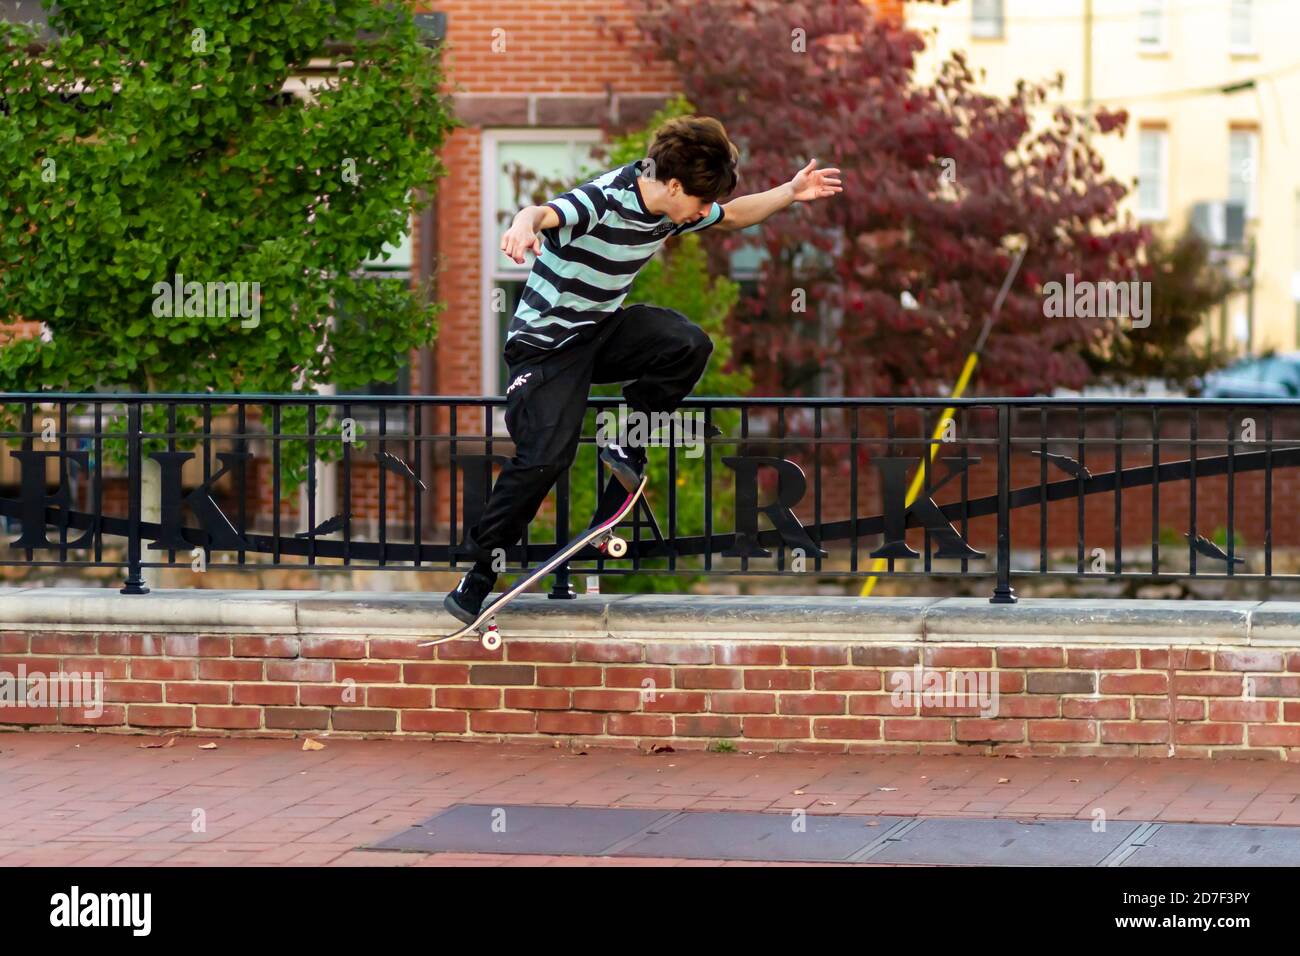 Frederick, MD, USA 10/14/2020: Un adolescente caucasico che indossa t-shirt e pantaloni da pista sta praticando un salto di ollie con il suo skateboard. Tenta di ju Foto Stock